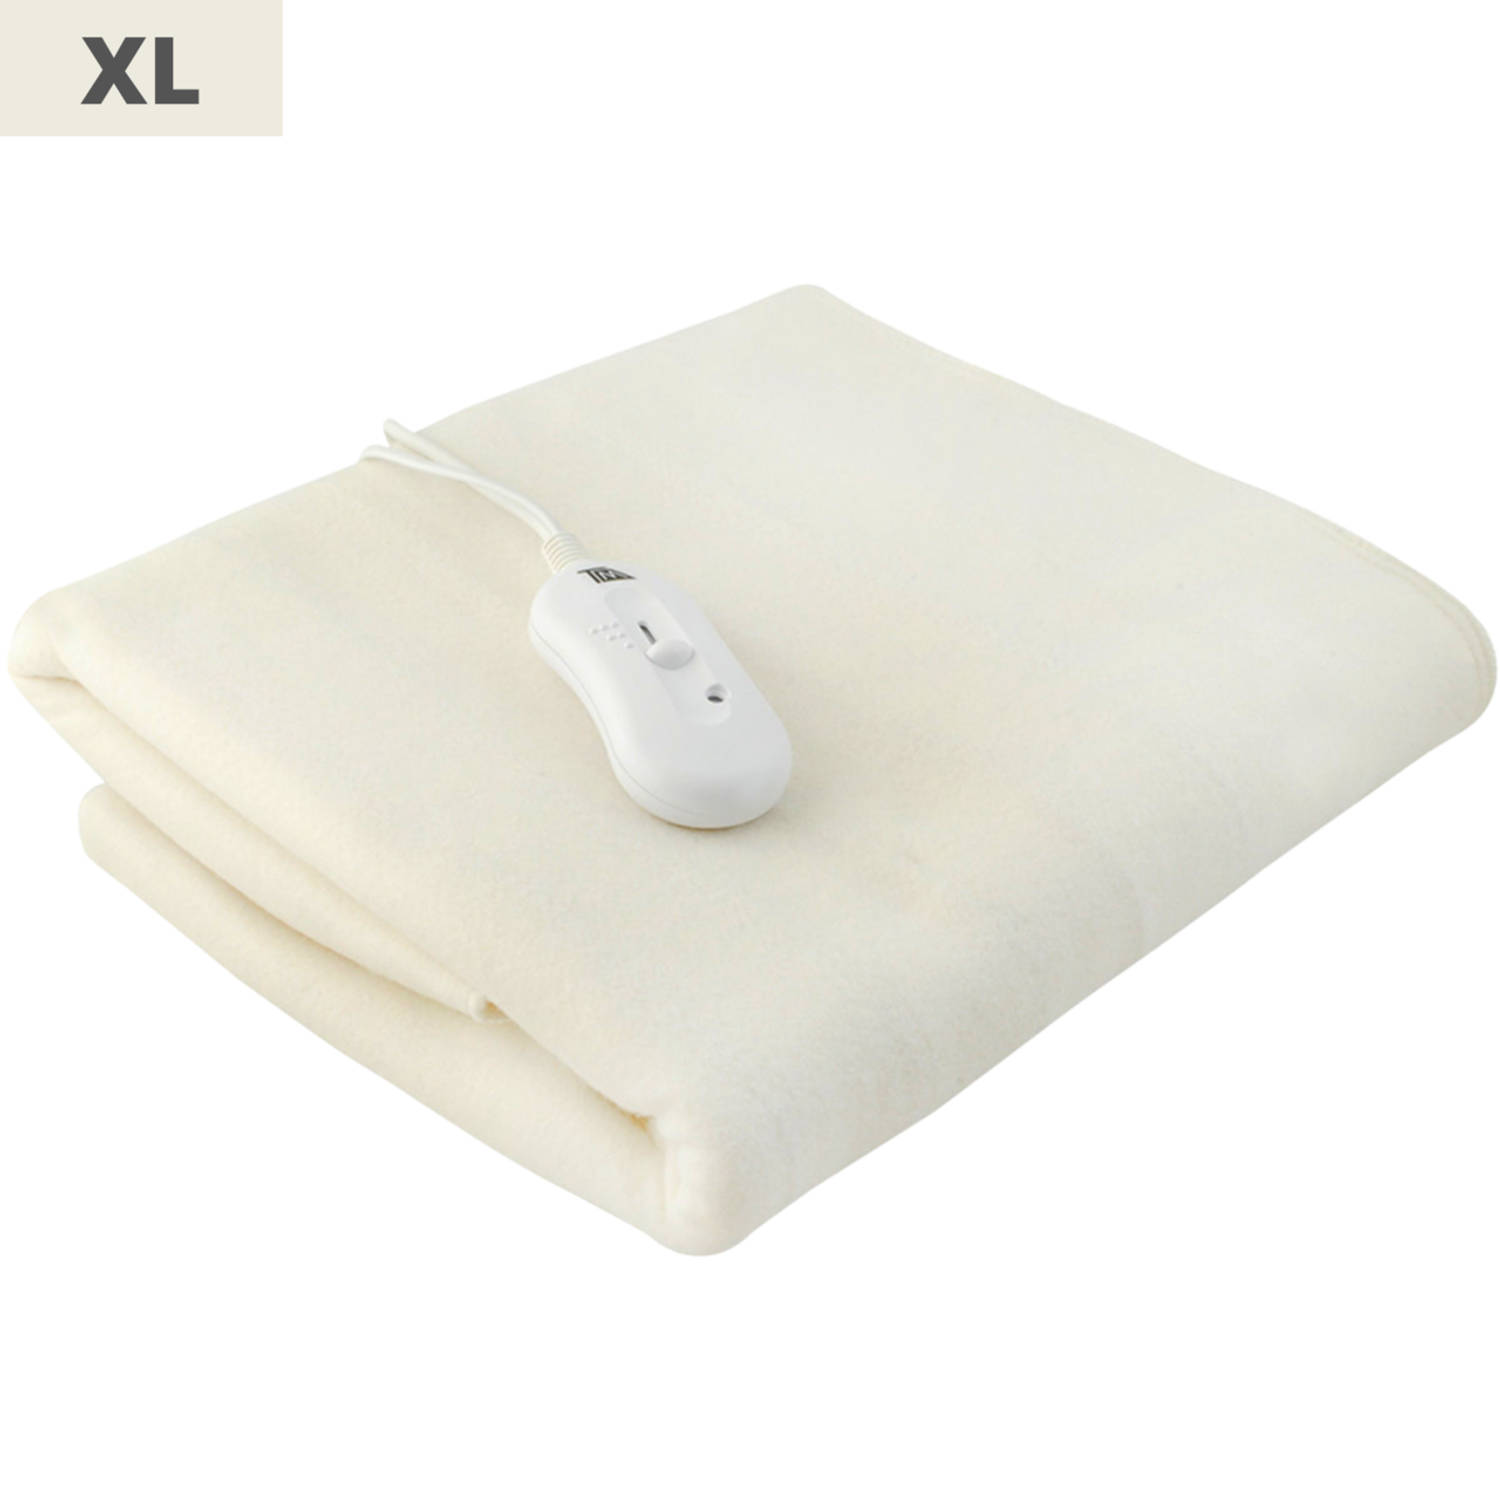 Elektrische deken - Elektrische onderdeken - 190 x 80 cm - XL formaat